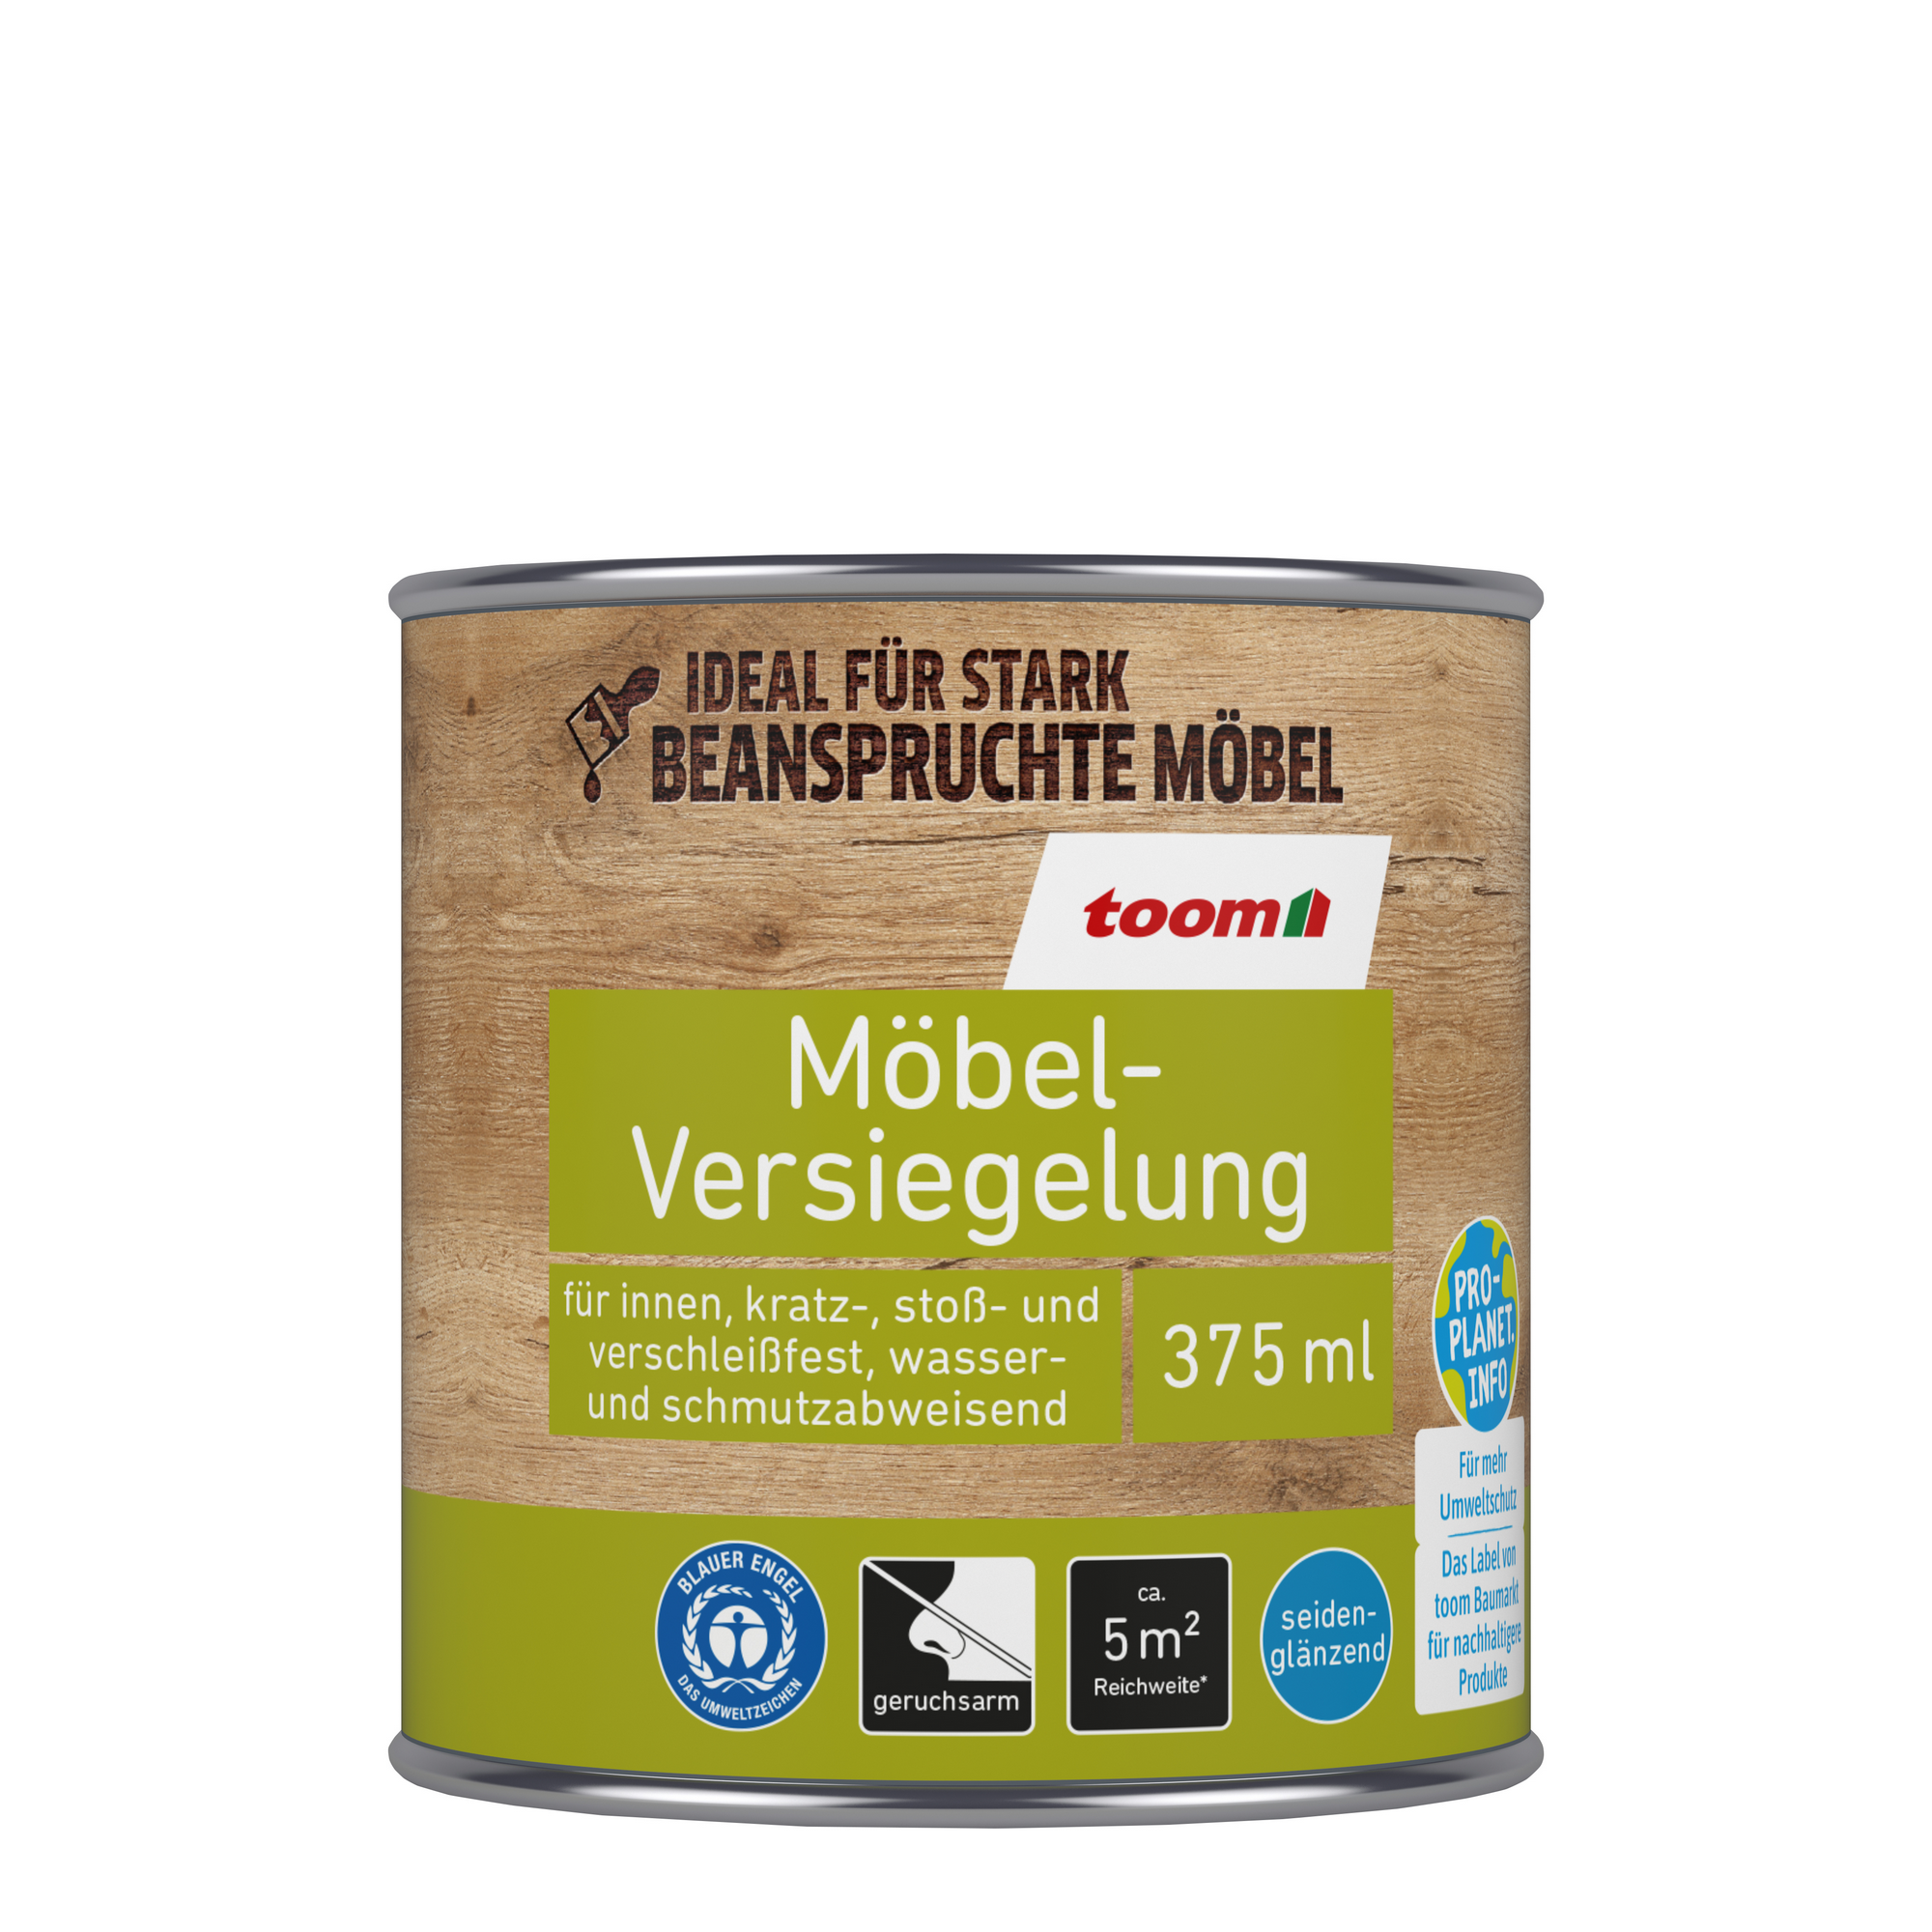 Möbel-Versiegelung teakfarben 375 ml + product picture